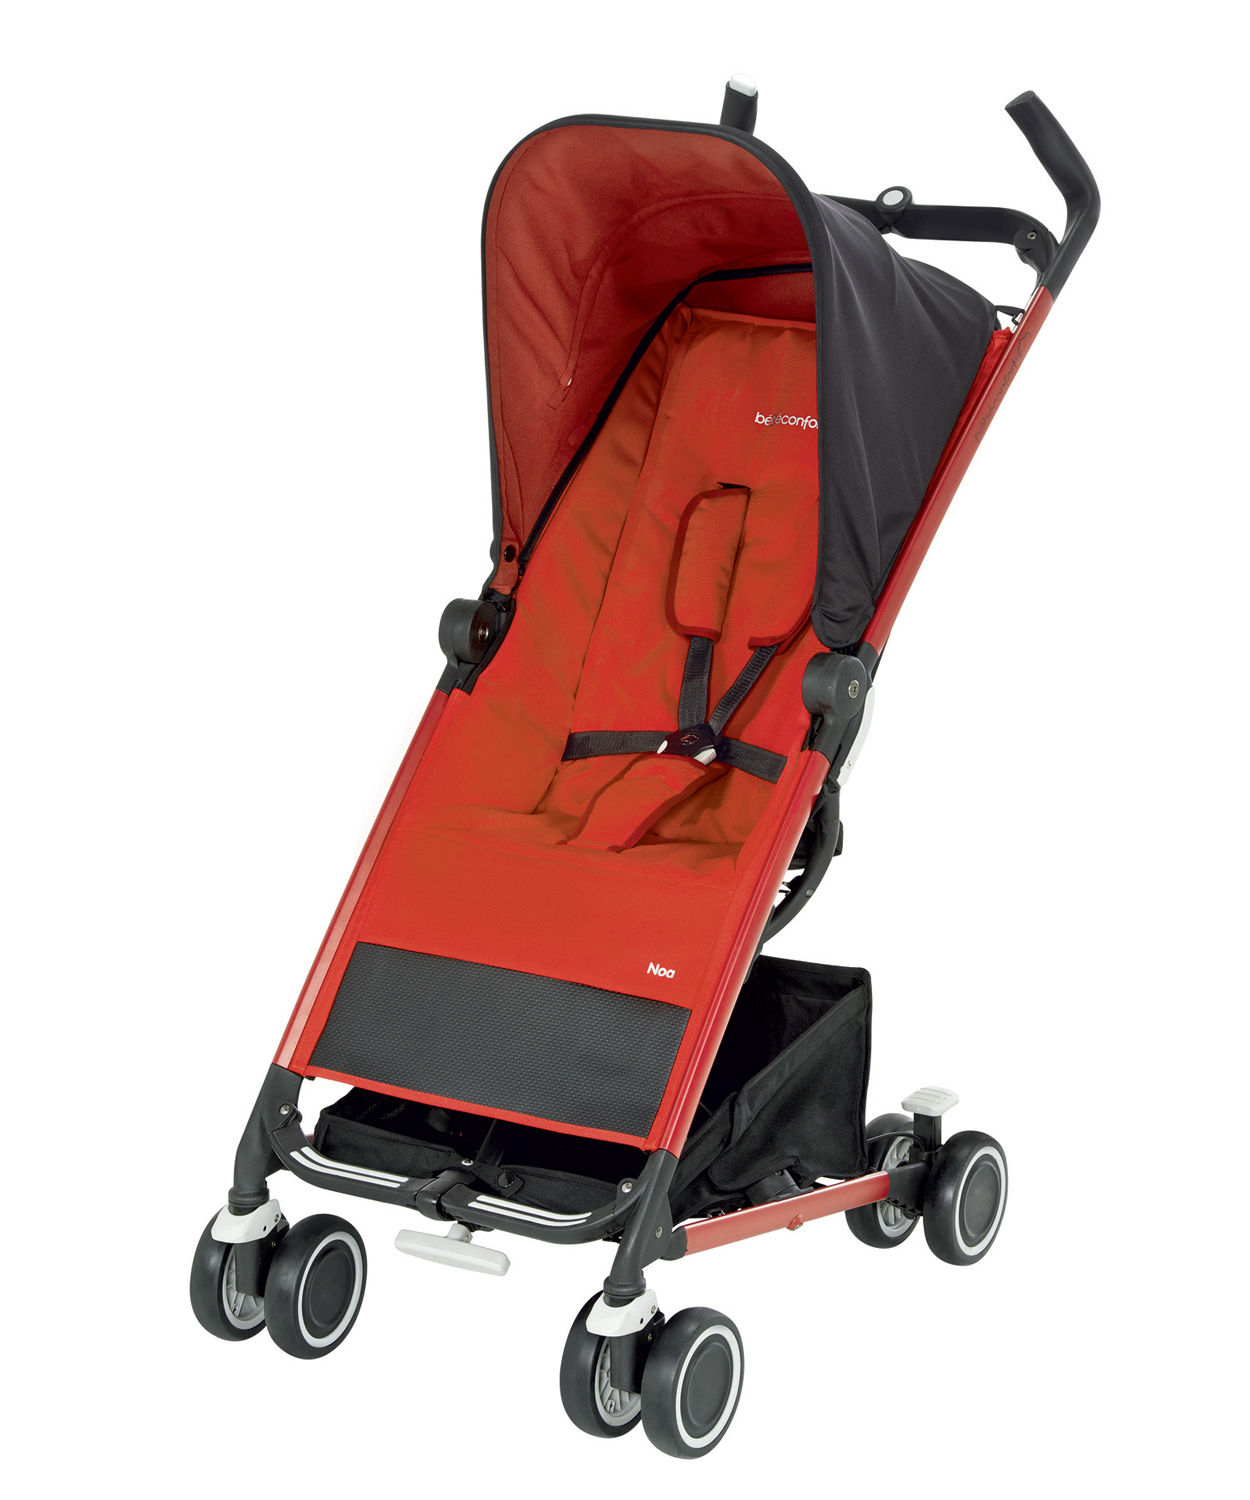 Noa Stroller Bebe Confort Designed By Faltazi In Nantes France